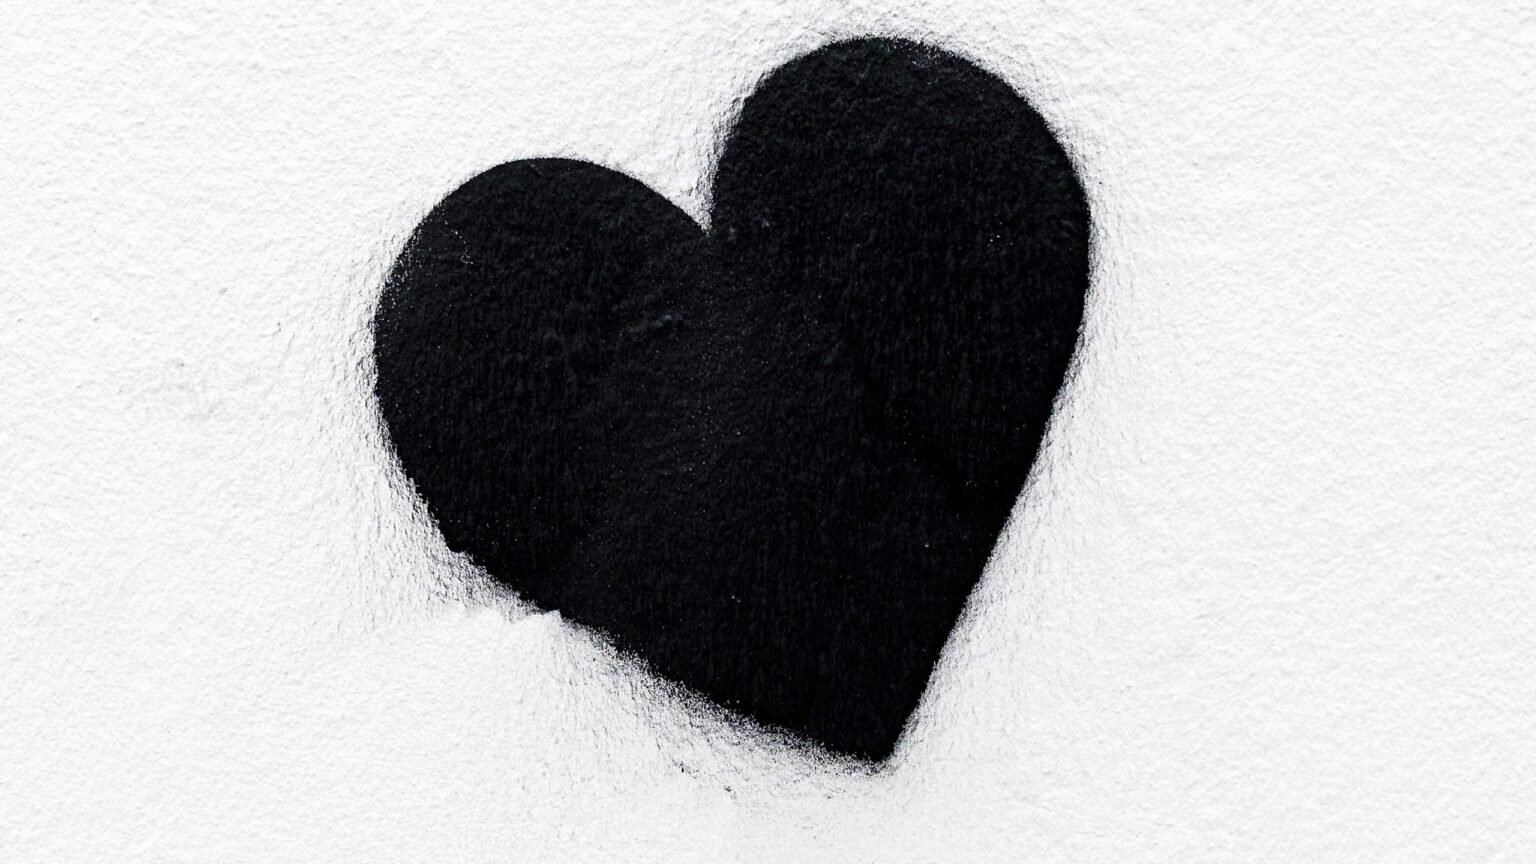 фото черных сердечек